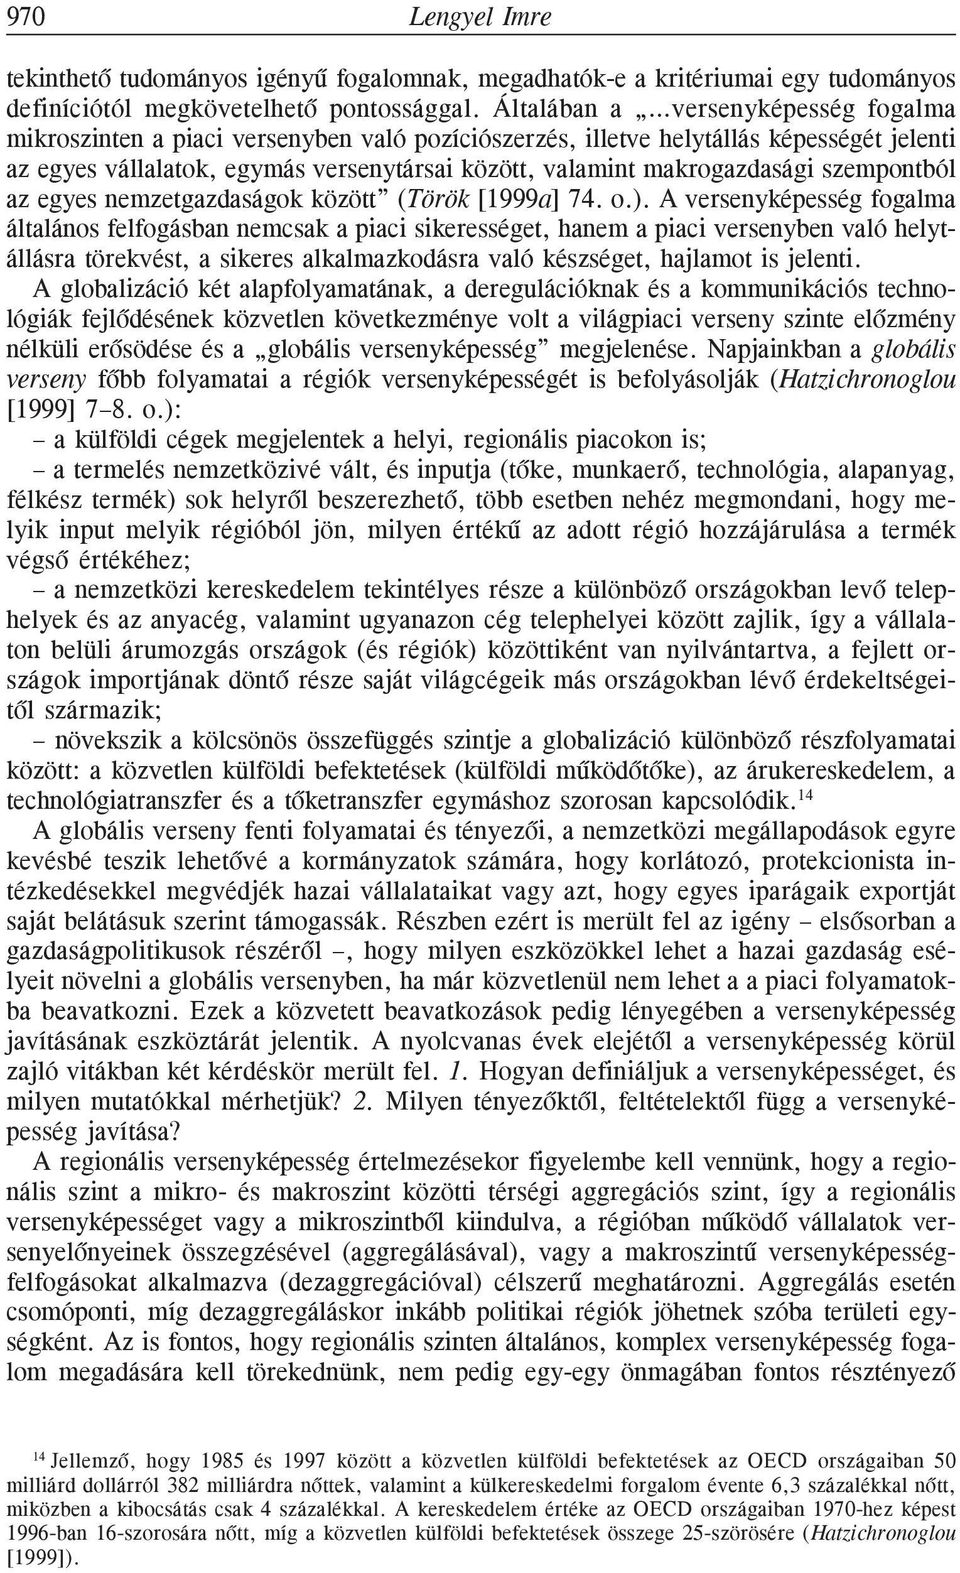 makrogazdasági szempontból az egyes nemzetgazdaságok között (Török [1999a] 74. o.).